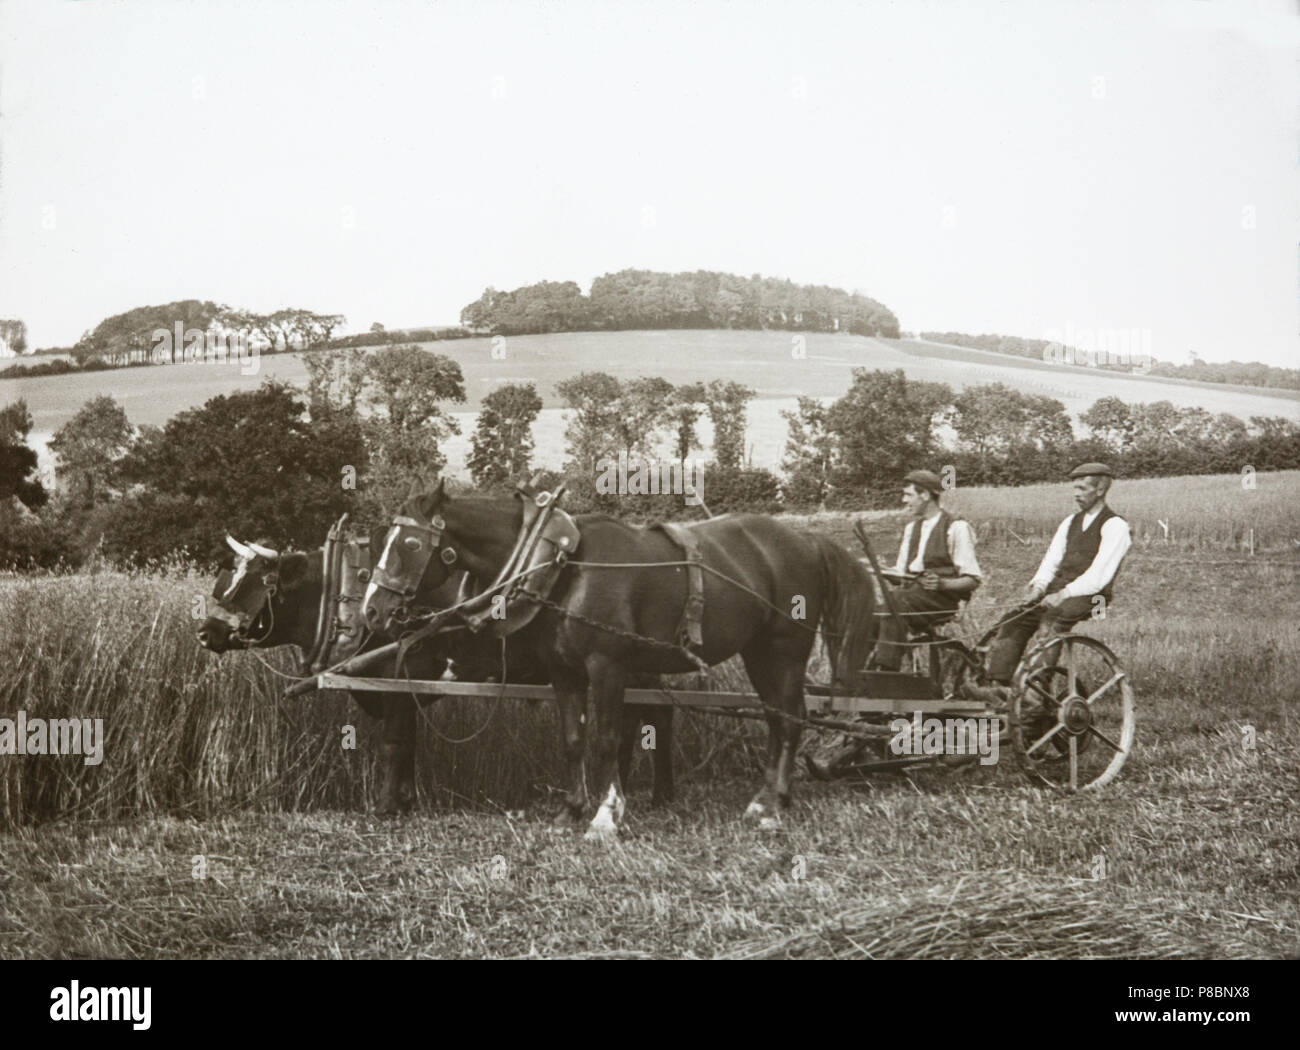 Ein Ende des 19. Jahrhunderts Foto zeigt zwei Männer in einem Warenkorb von einem Pferd und ein Stier gezogen wird, umgeben von Feldern, in England. Zeigt landwirtschaftliche Leben in dieser Zeit. Stockfoto